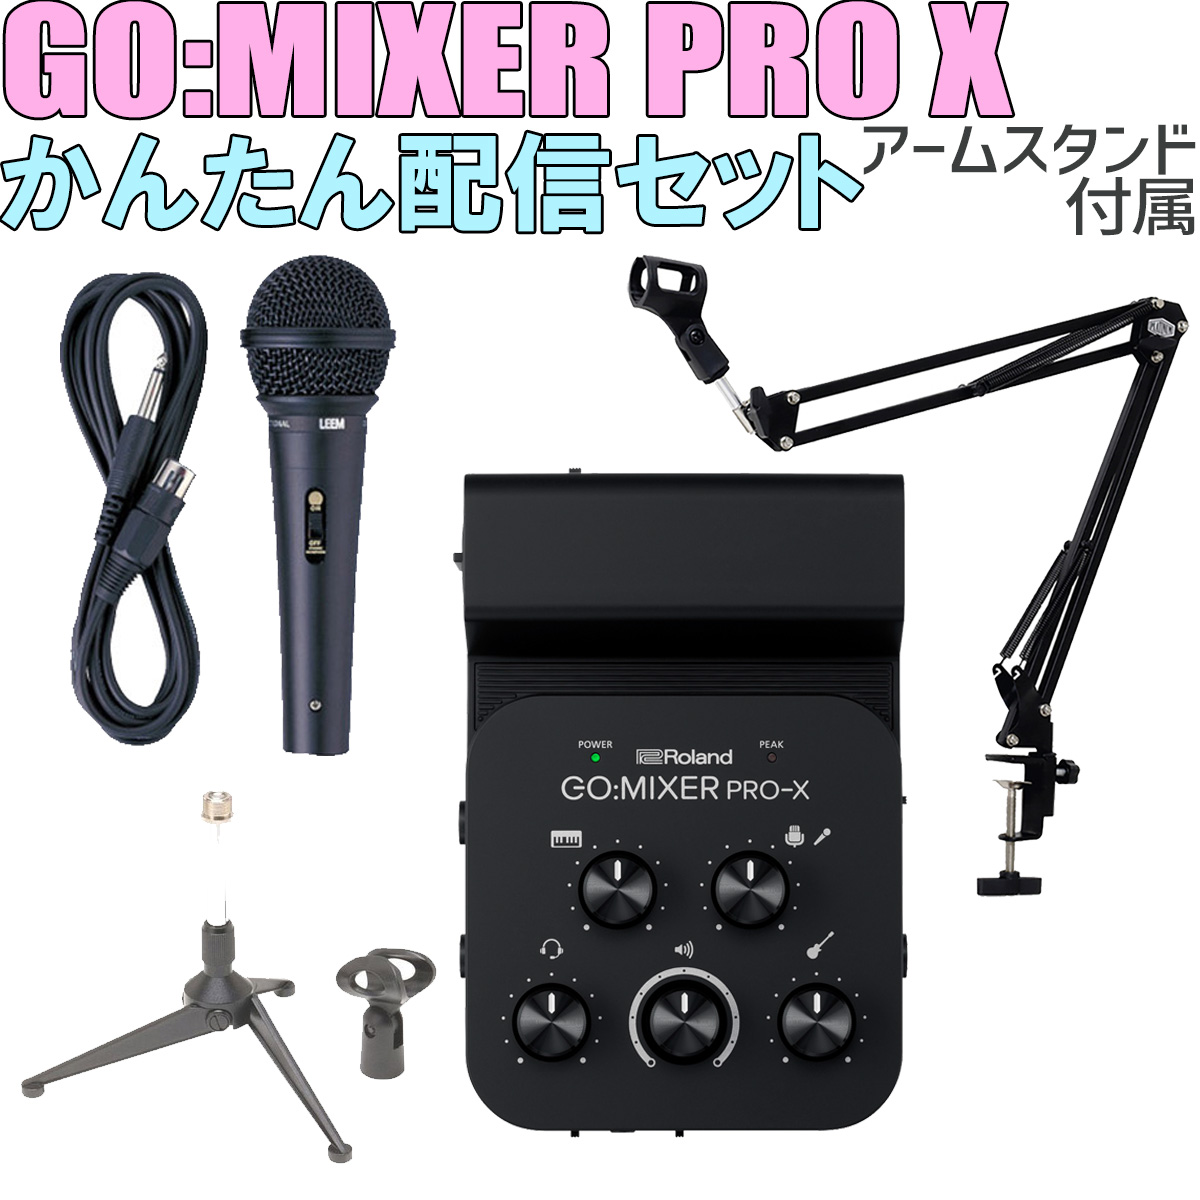 キャリングポーチプレゼント] Roland GO:MIXER PRO-X MPM-1000J 高音質